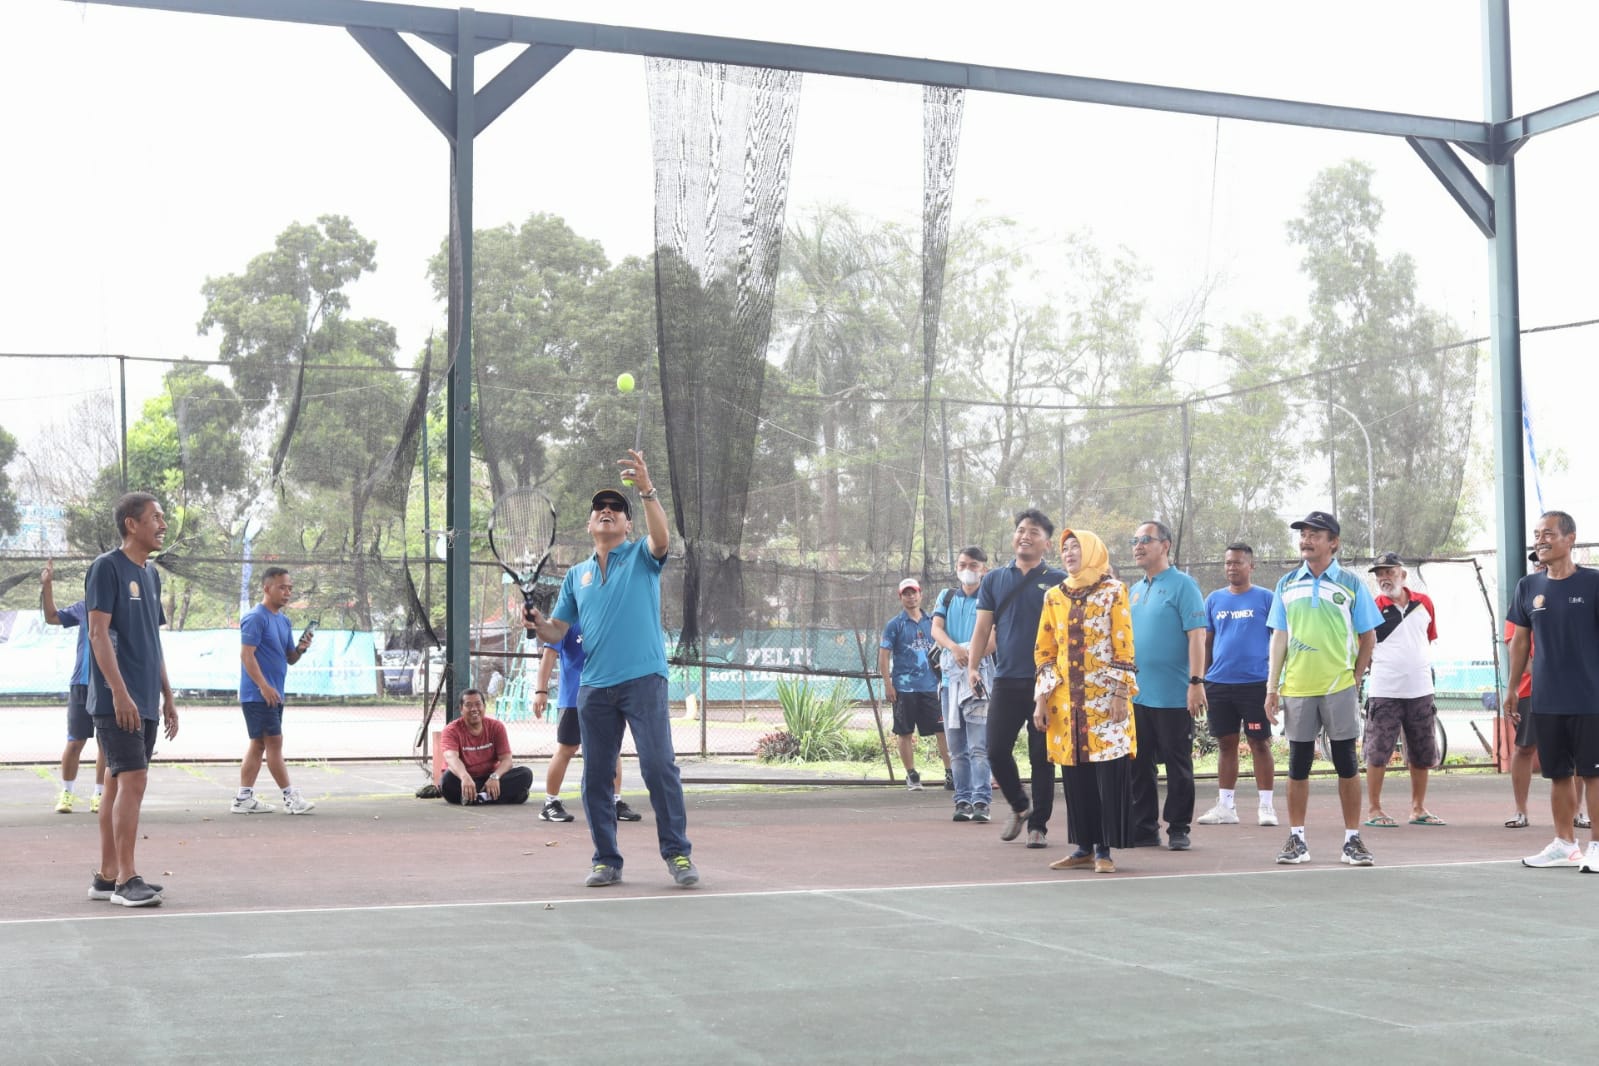 Jadikan Turnamen Kejuaraan Tenis Lapangan di Dadaha Ajang Silaturahmi